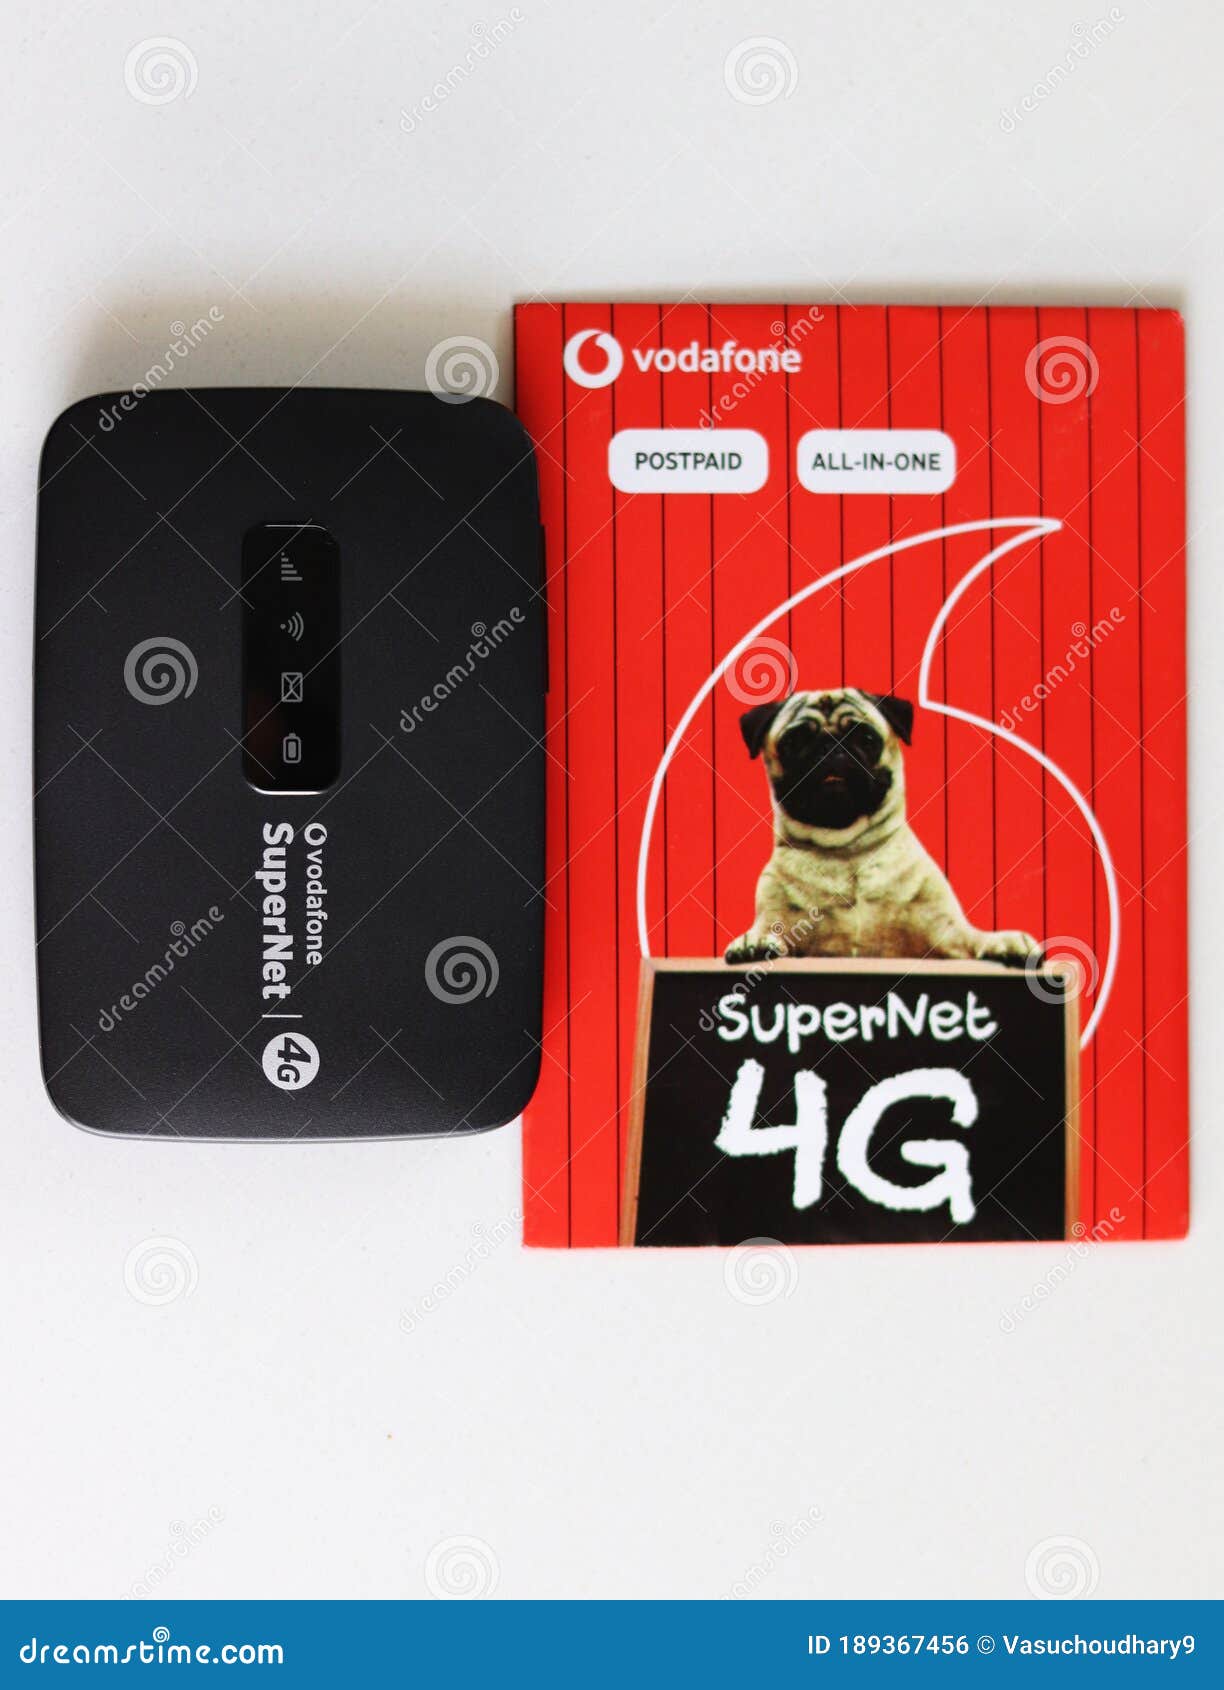 SuperNet 4G